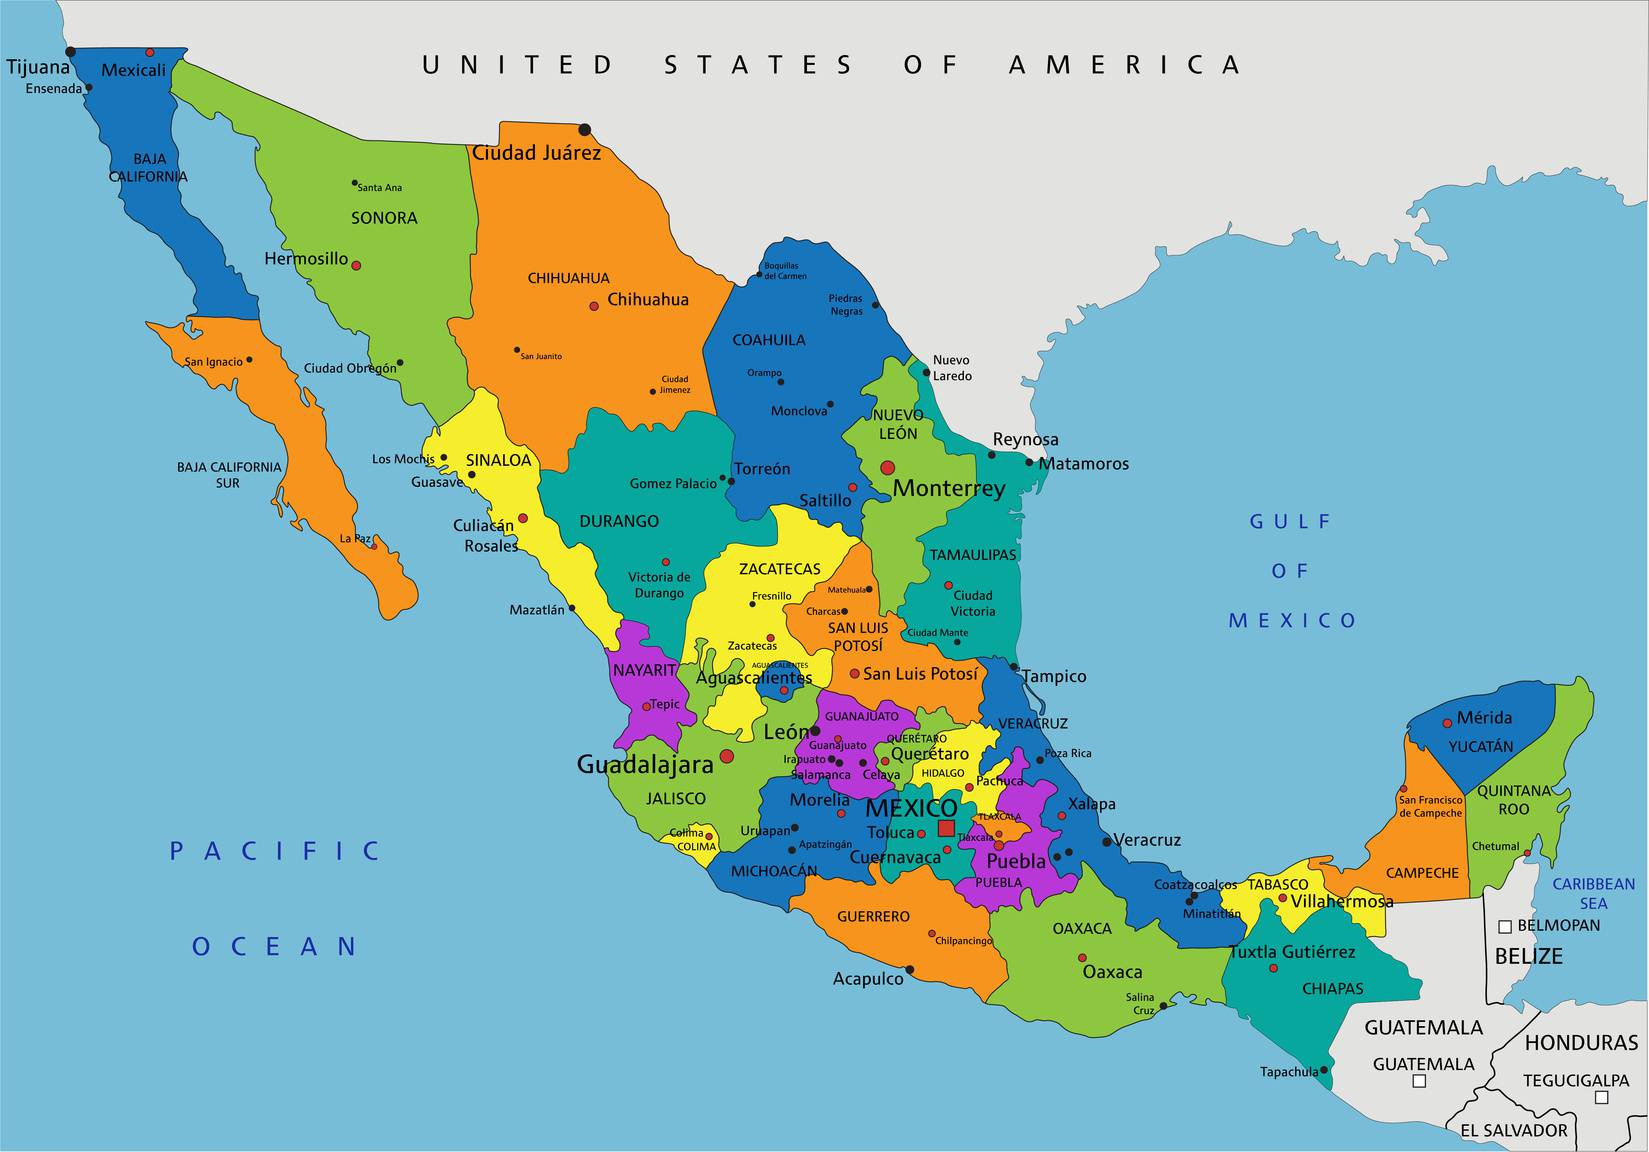 Carte des régions du Mexique